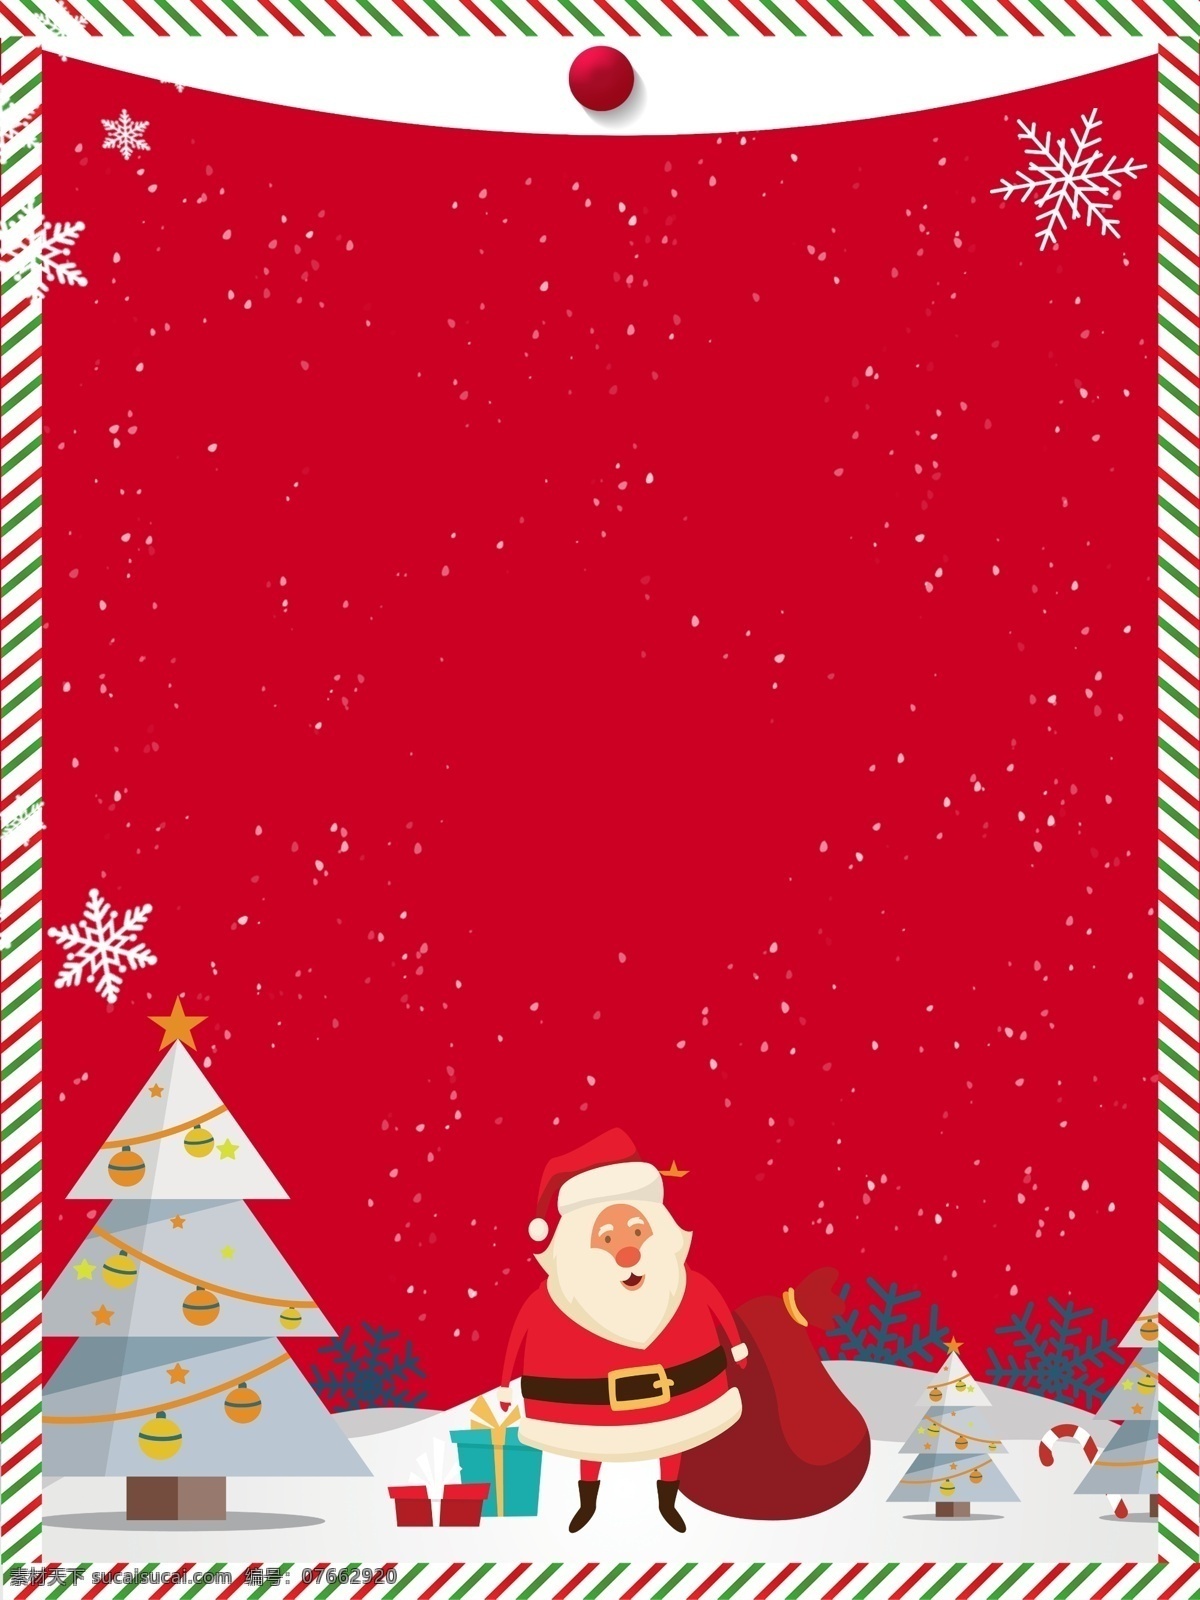 圣诞老人 圣诞树 背景 圣诞节 雪花 礼物 圣诞广告 圣诞 圣诞快乐 圣诞雪花 圣诞展架 新年海报 圣诞背景模板 背景设计 创意圣诞背景